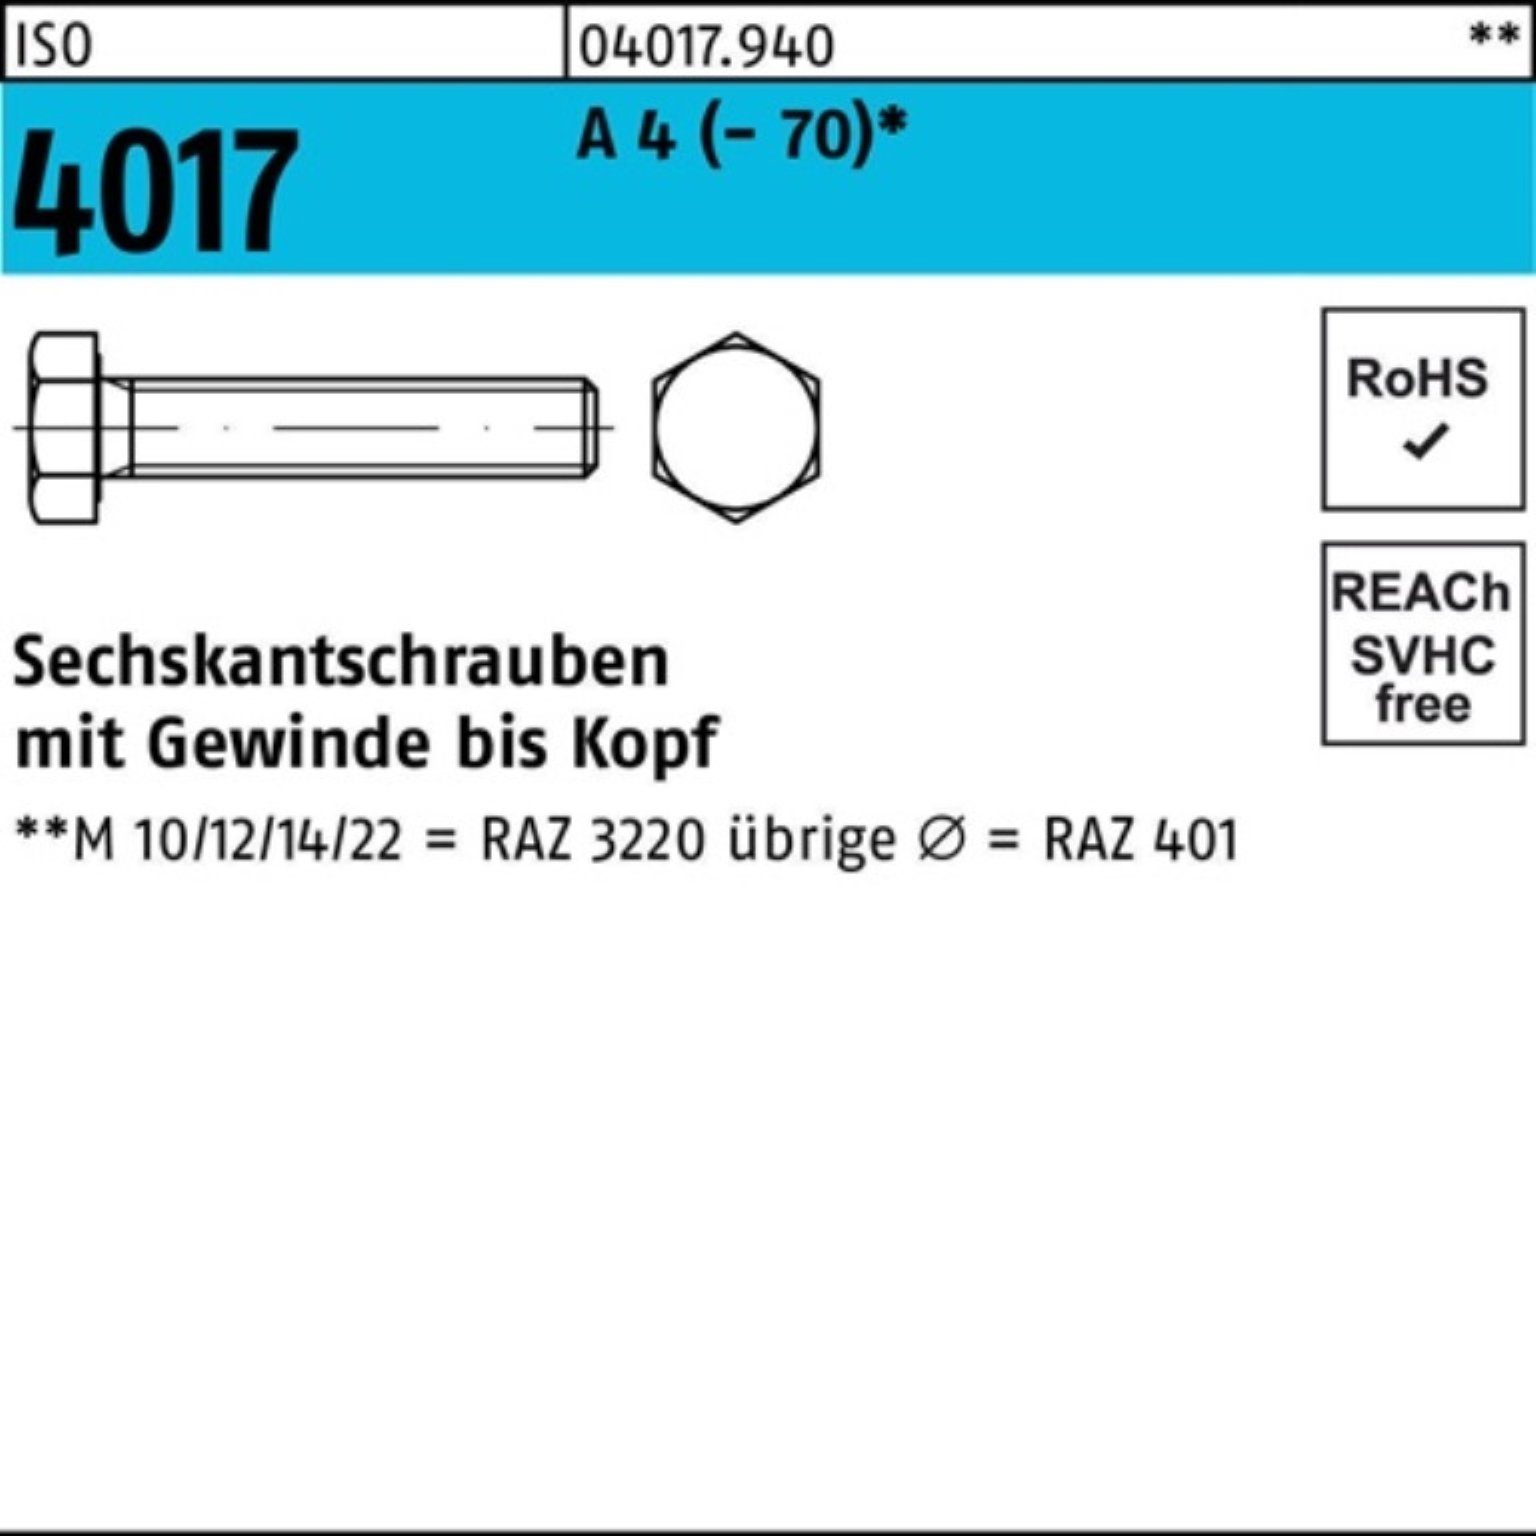 Bufab Sechskantschraube 200er Pack Sechskantschraube ISO 4017 VG M6x 22 A 4 (70) 200 Stück